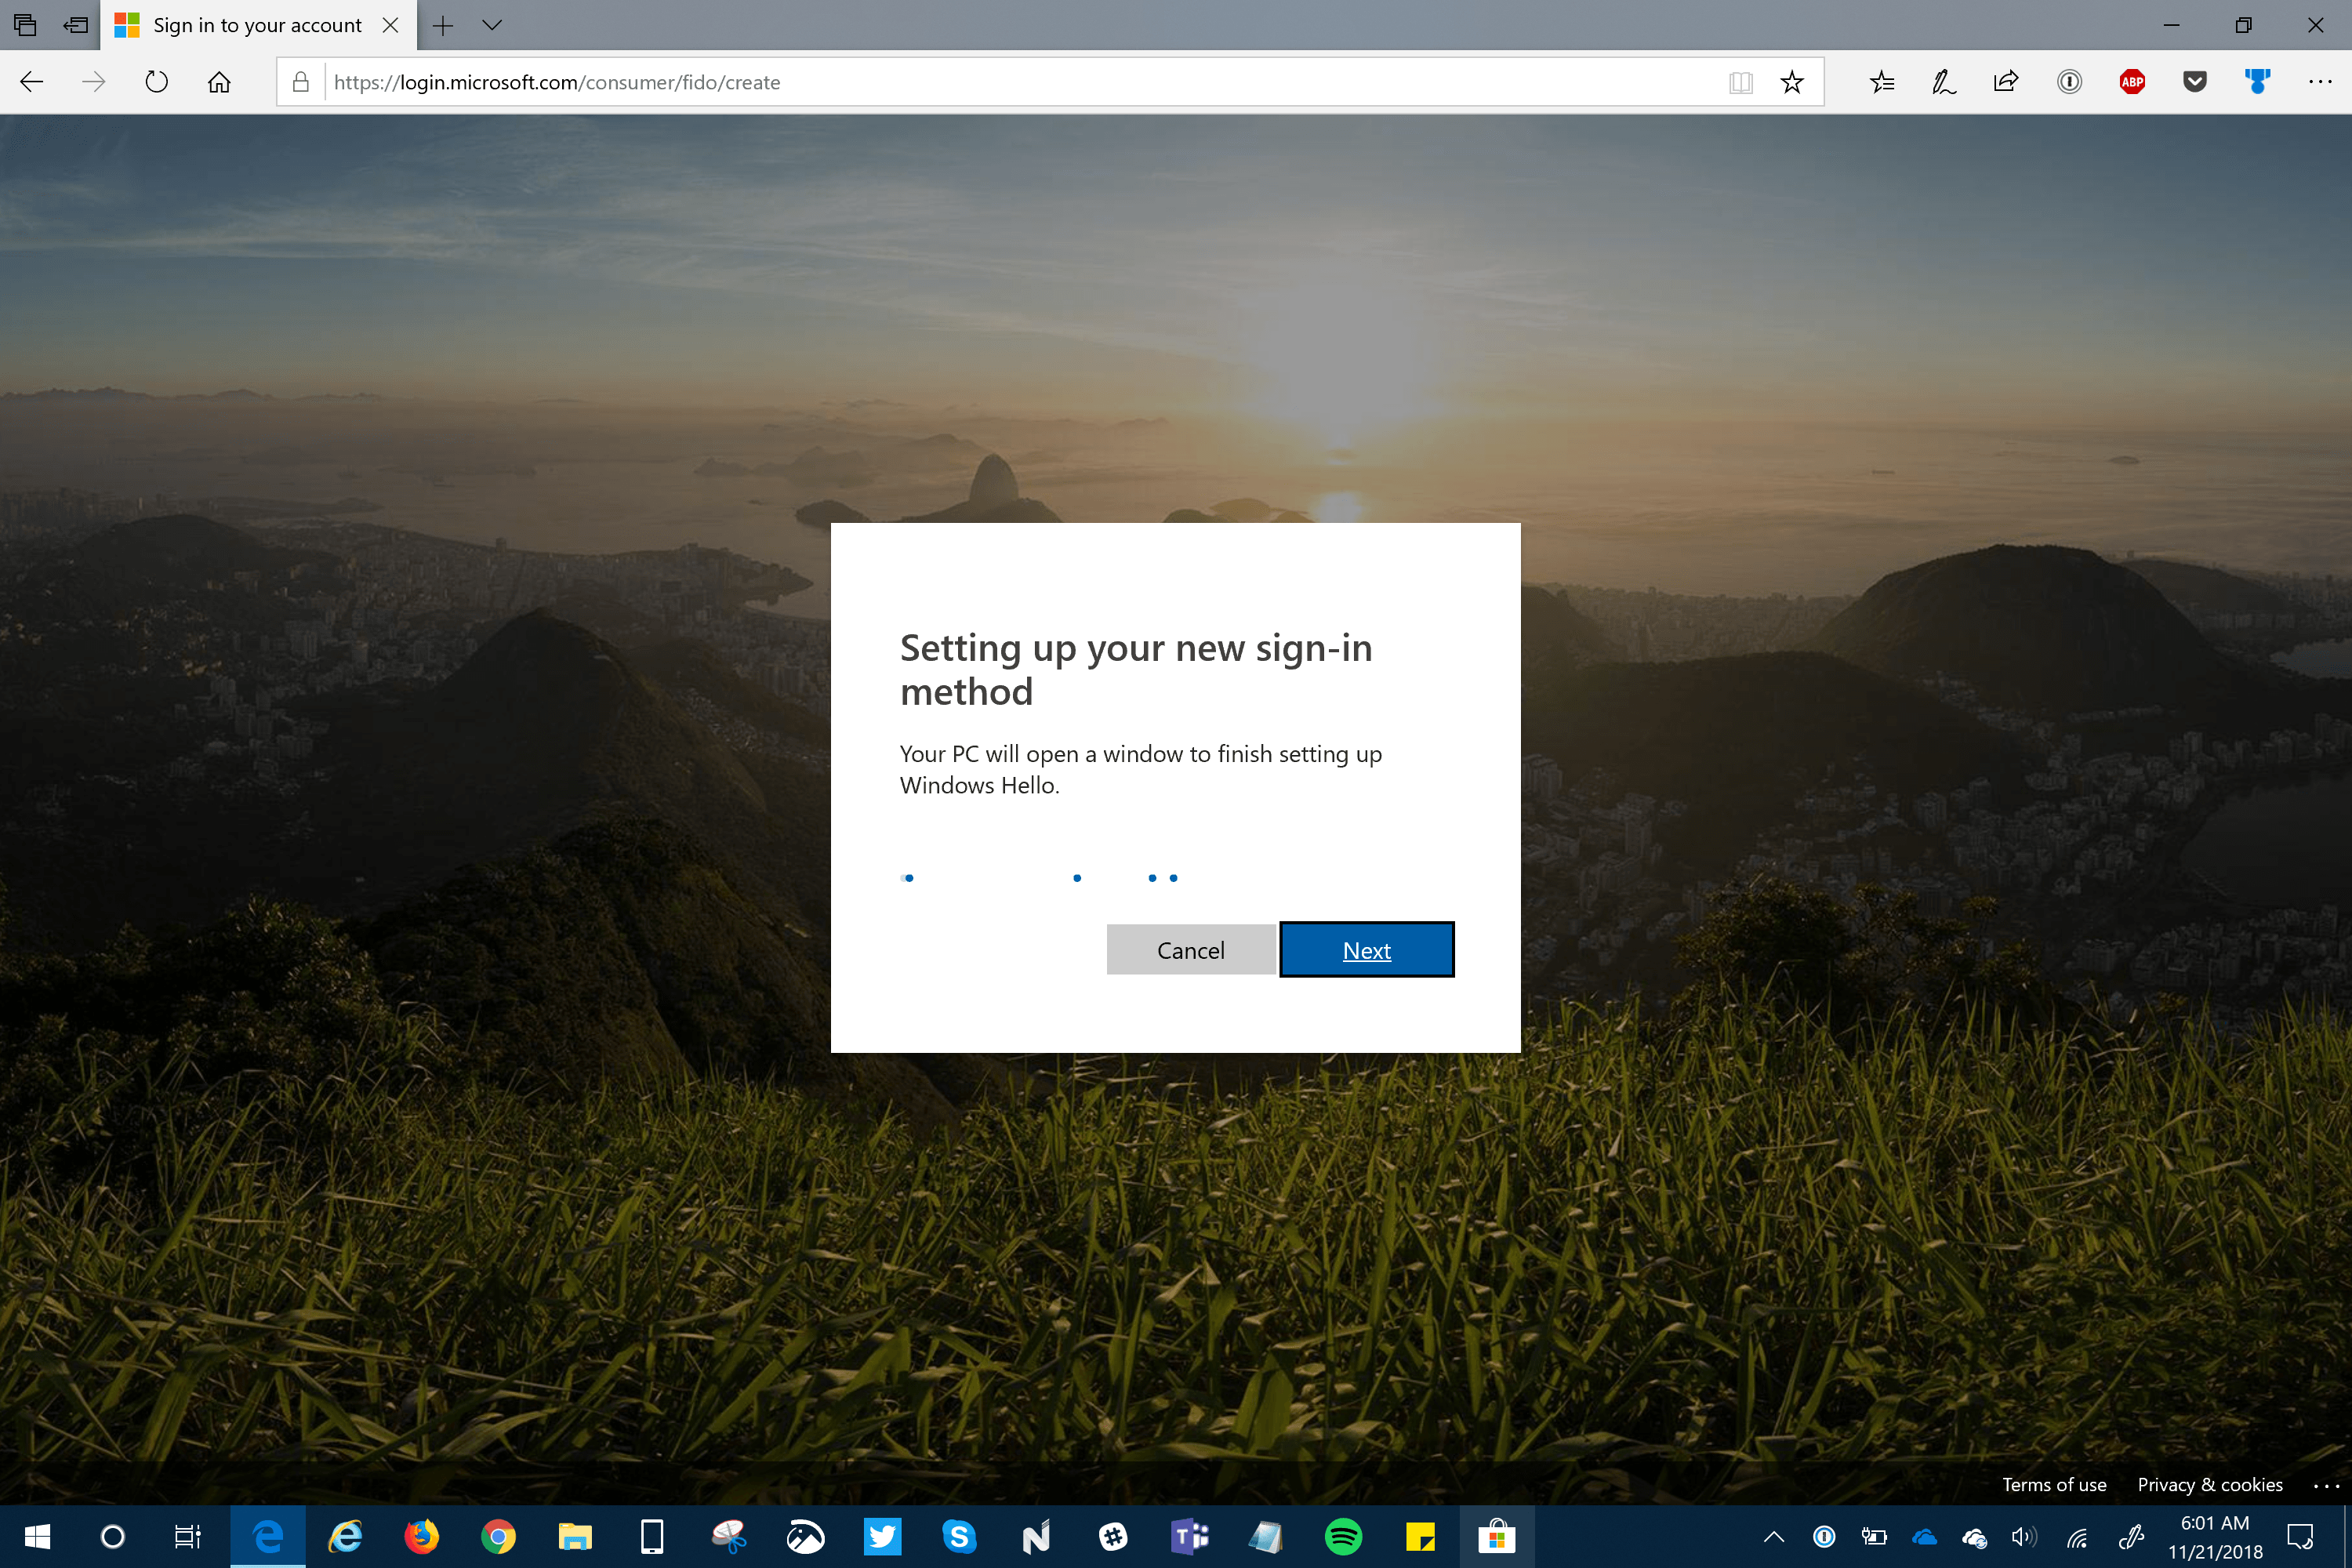 Windows Hello Passwordless Setup for MSA